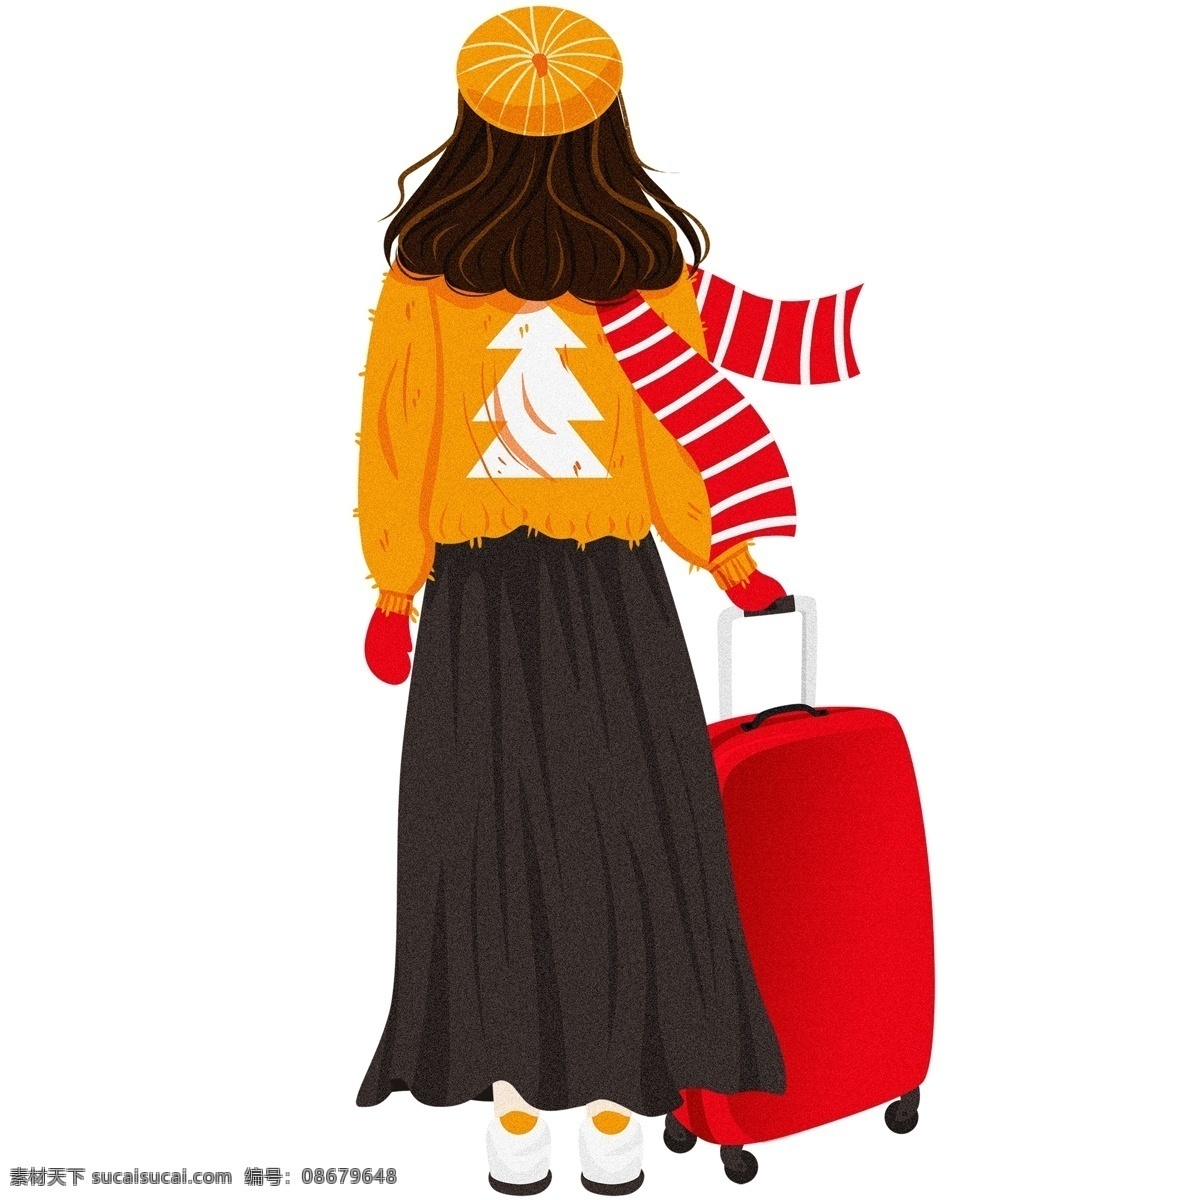 拖 行李 女孩 人物 背影 卡通 可爱 插画 手绘 女人 行李箱 少女